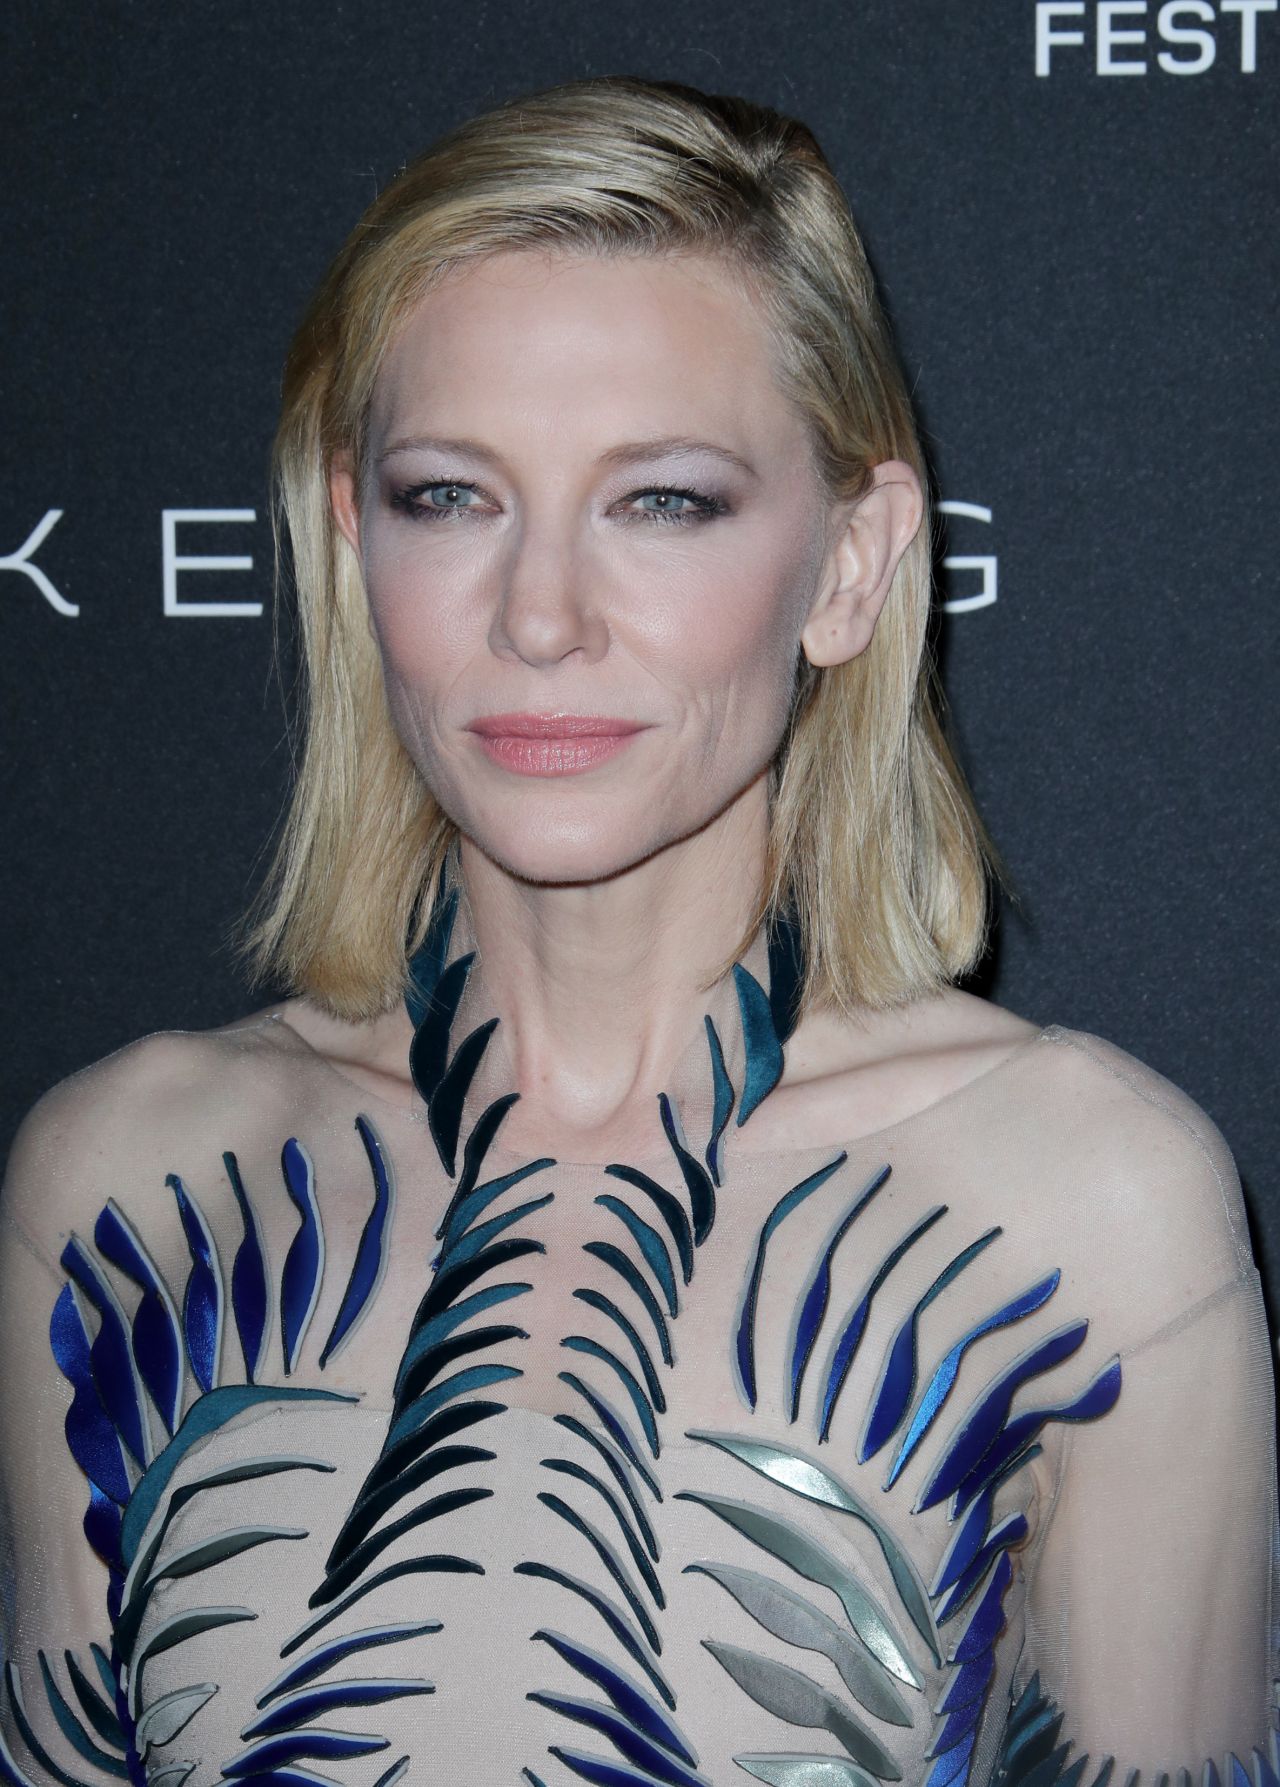 Queen Cate Blanchett on Instagram: That smirk 😍 . . # 